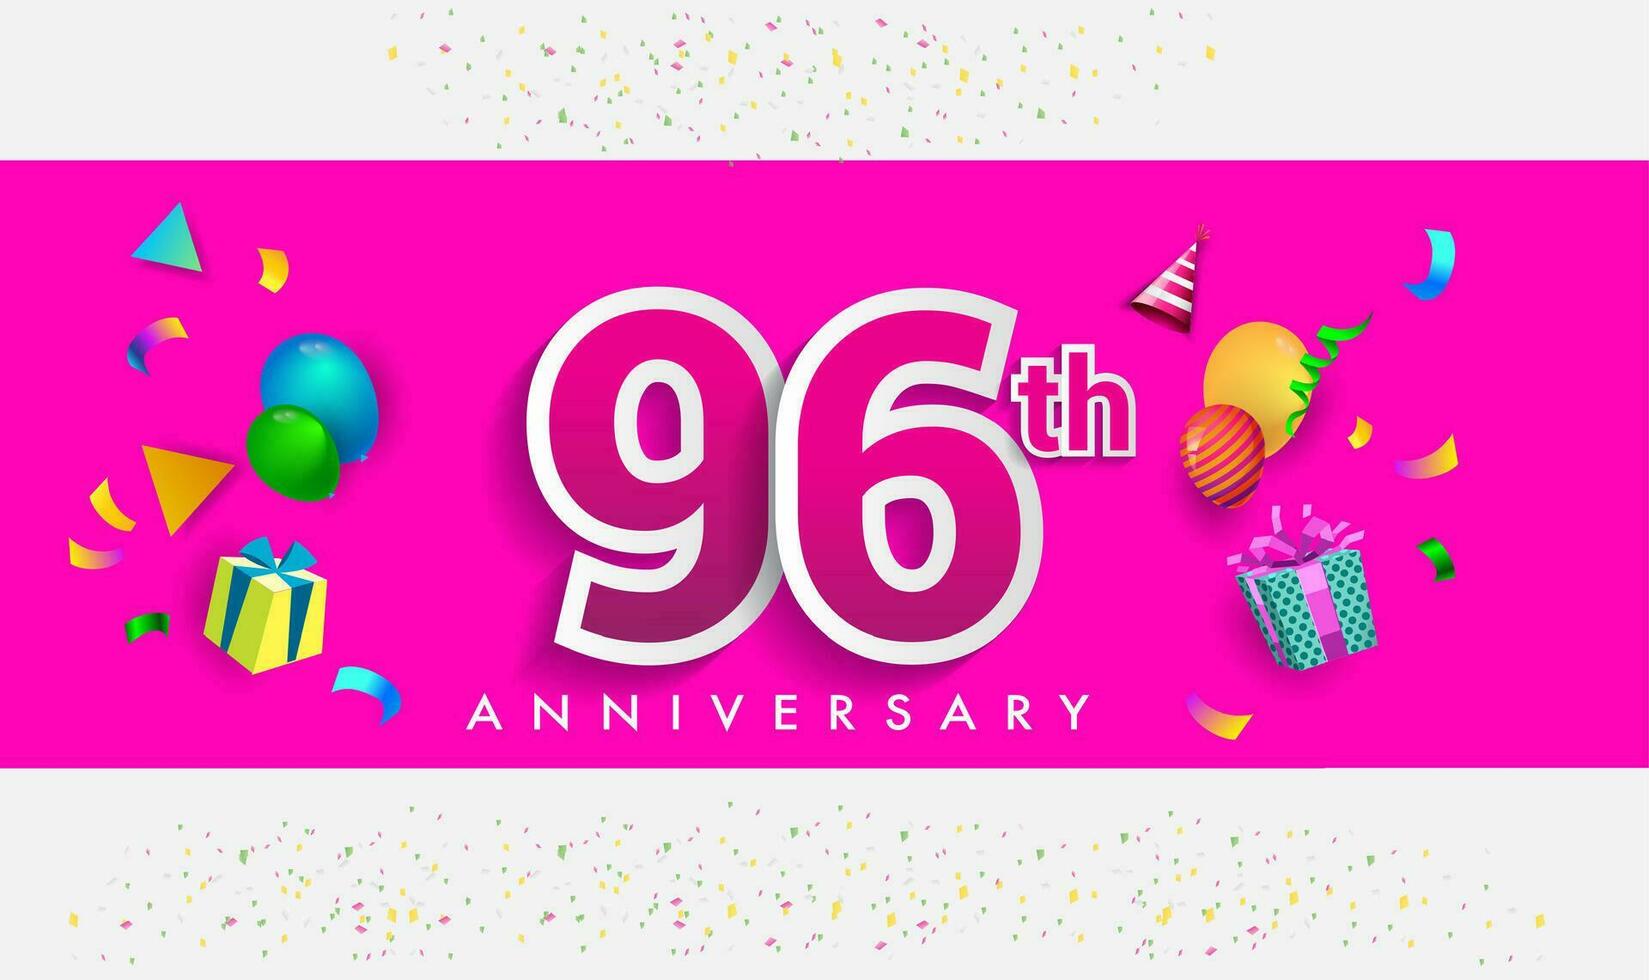 96 Jahre Jahrestag Feier Design, mit Geschenk Box und Luftballons, Band, bunt Vektor Vorlage Elemente zum Ihre Geburtstag feiern Party.